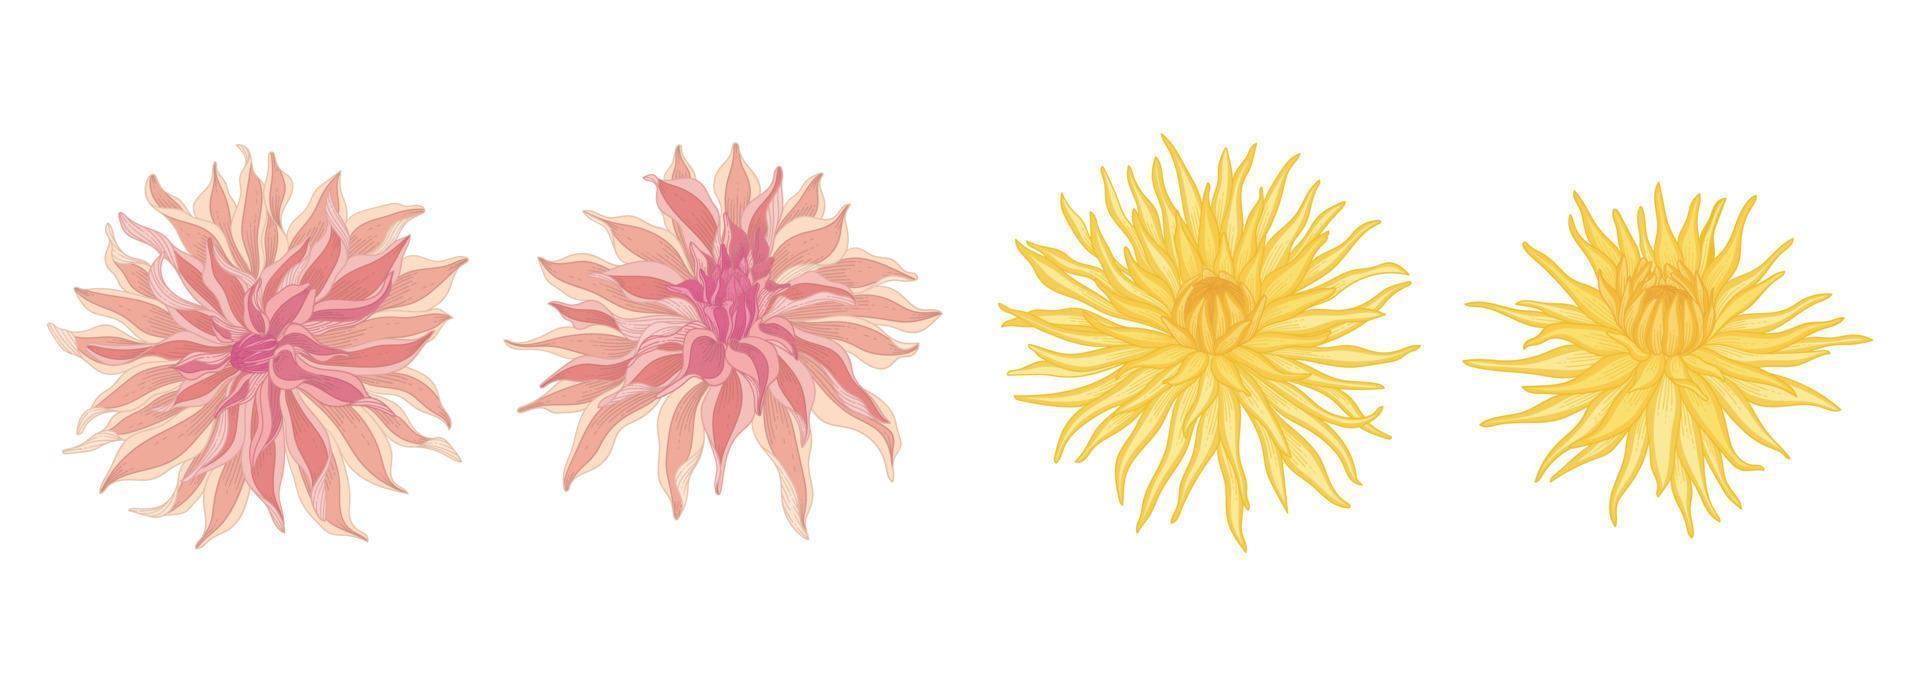 ensemble d'illustration de fleurs épanouies de dahlia. vecteur